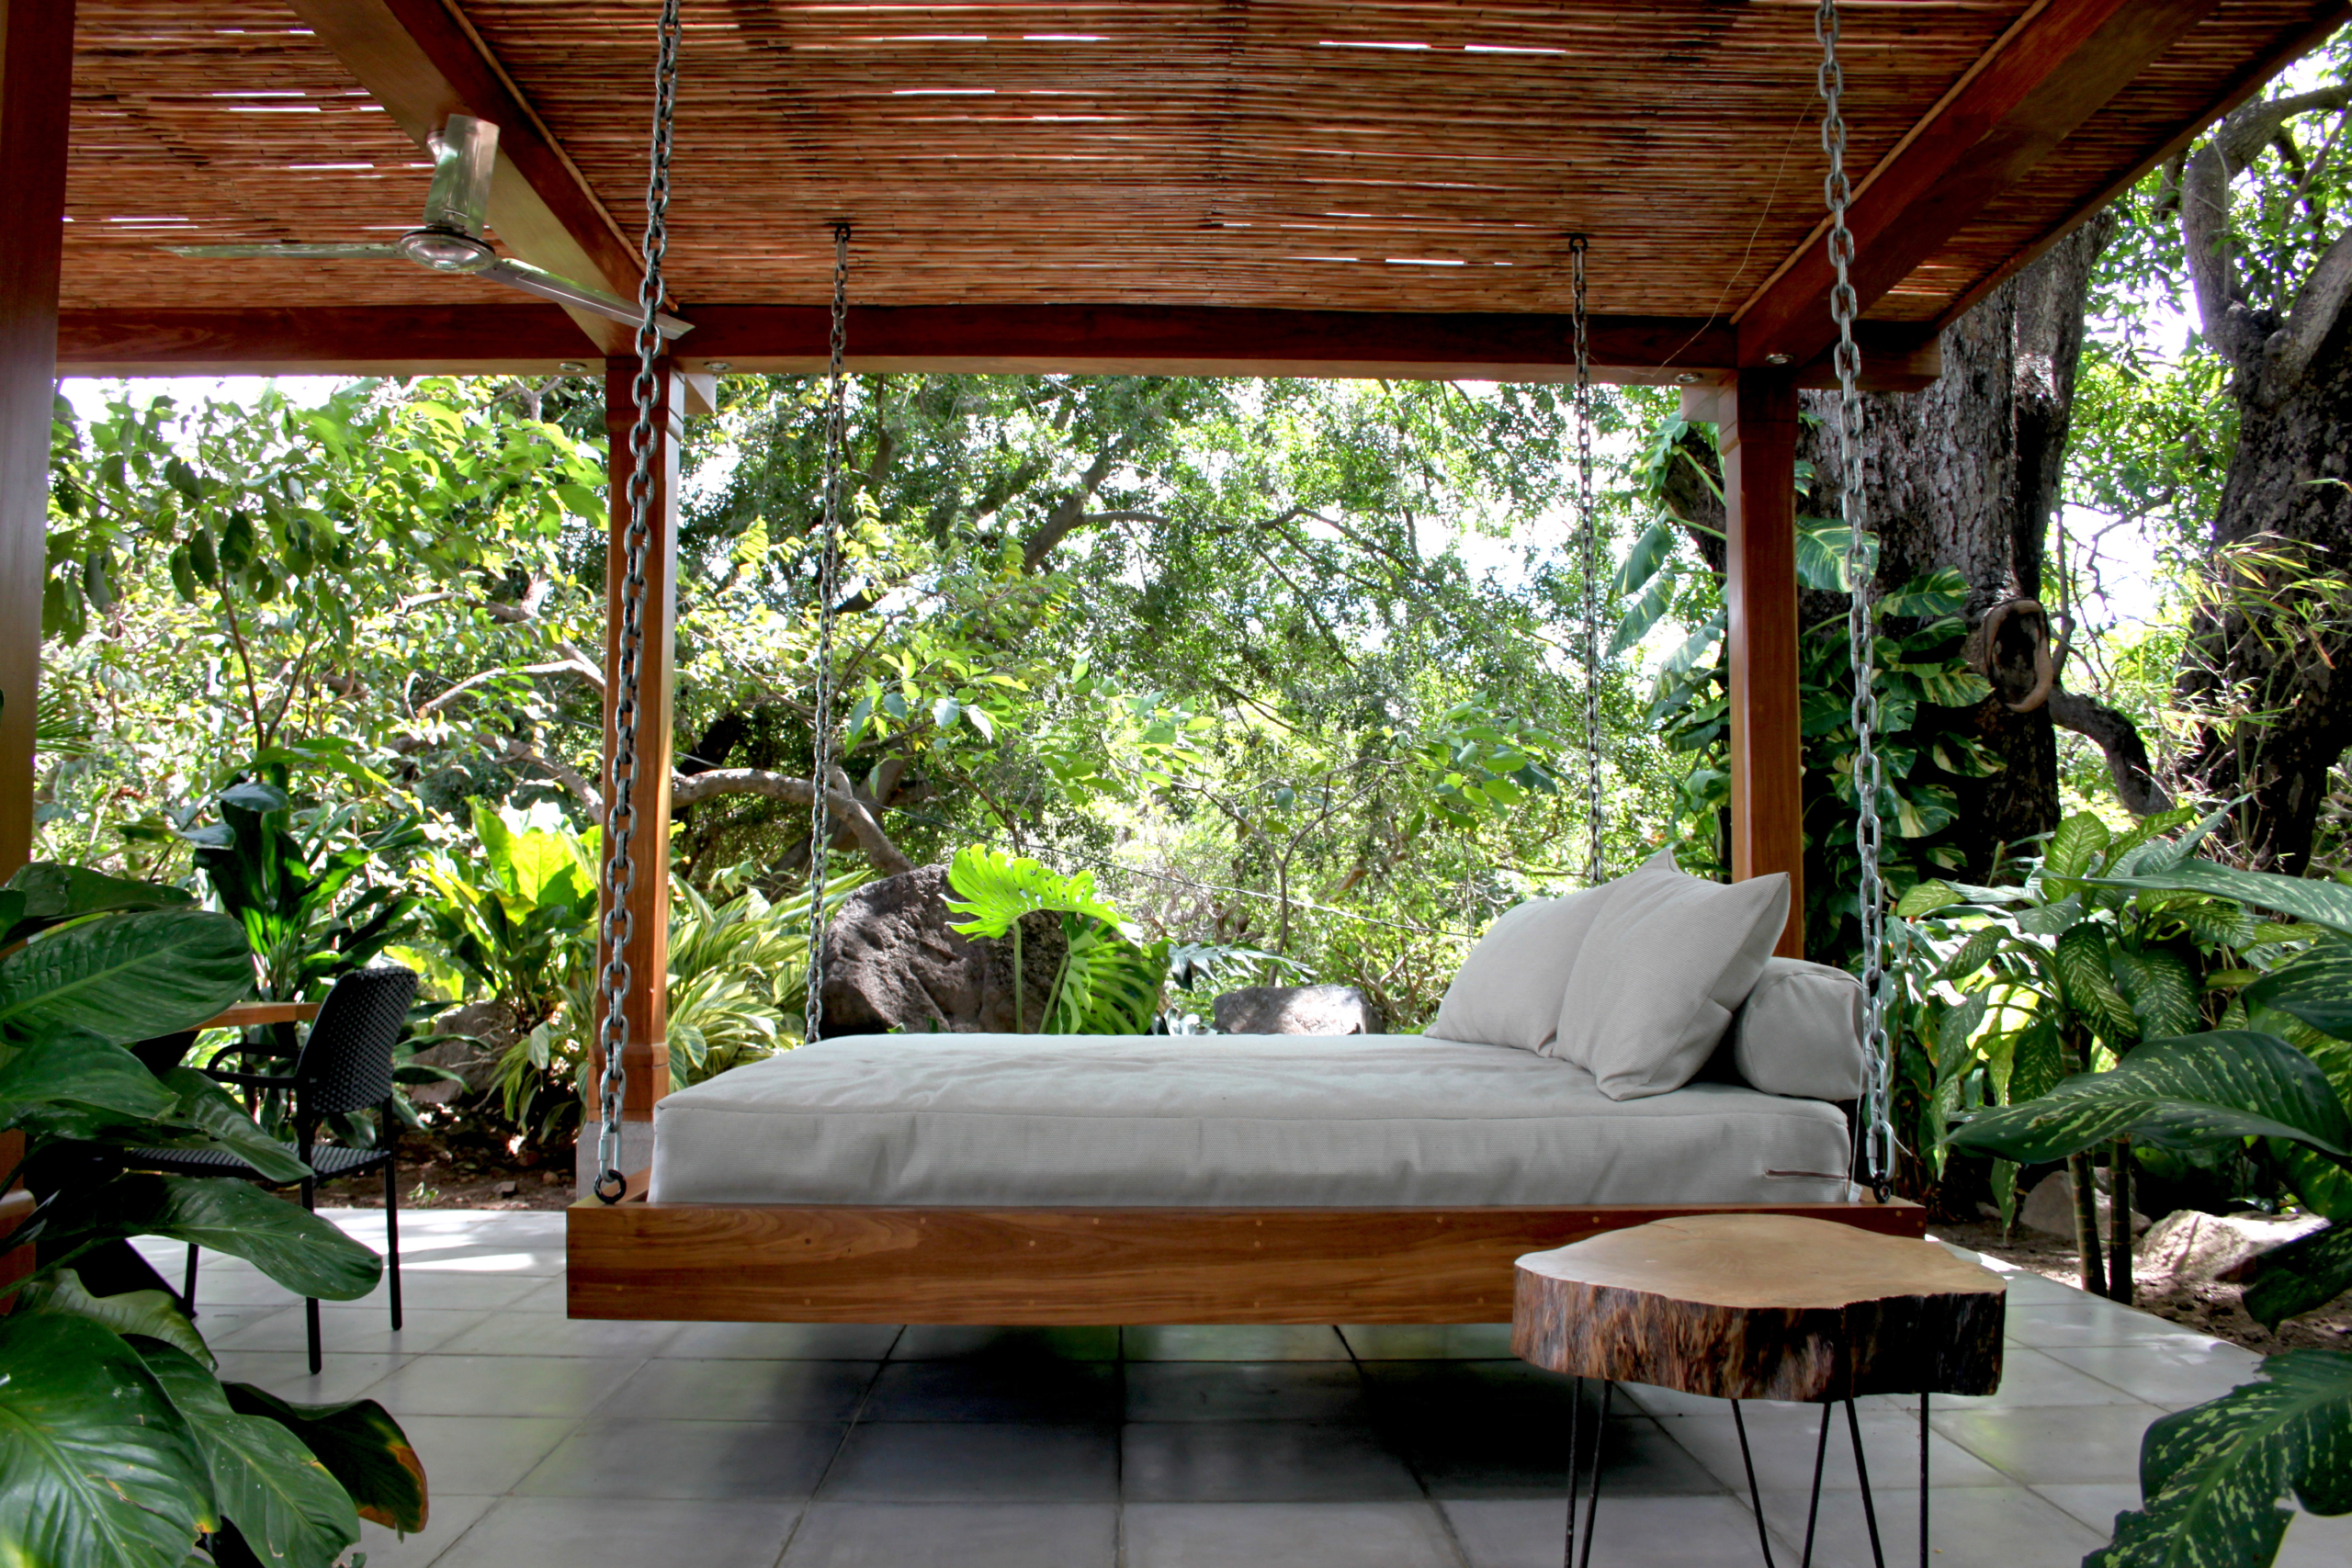 Những chiếc giường treo lớn trong vườn cũng là nơi lý tưởng để khách tạm thời nghỉ ngơi. (Ảnh: Shutterstock)